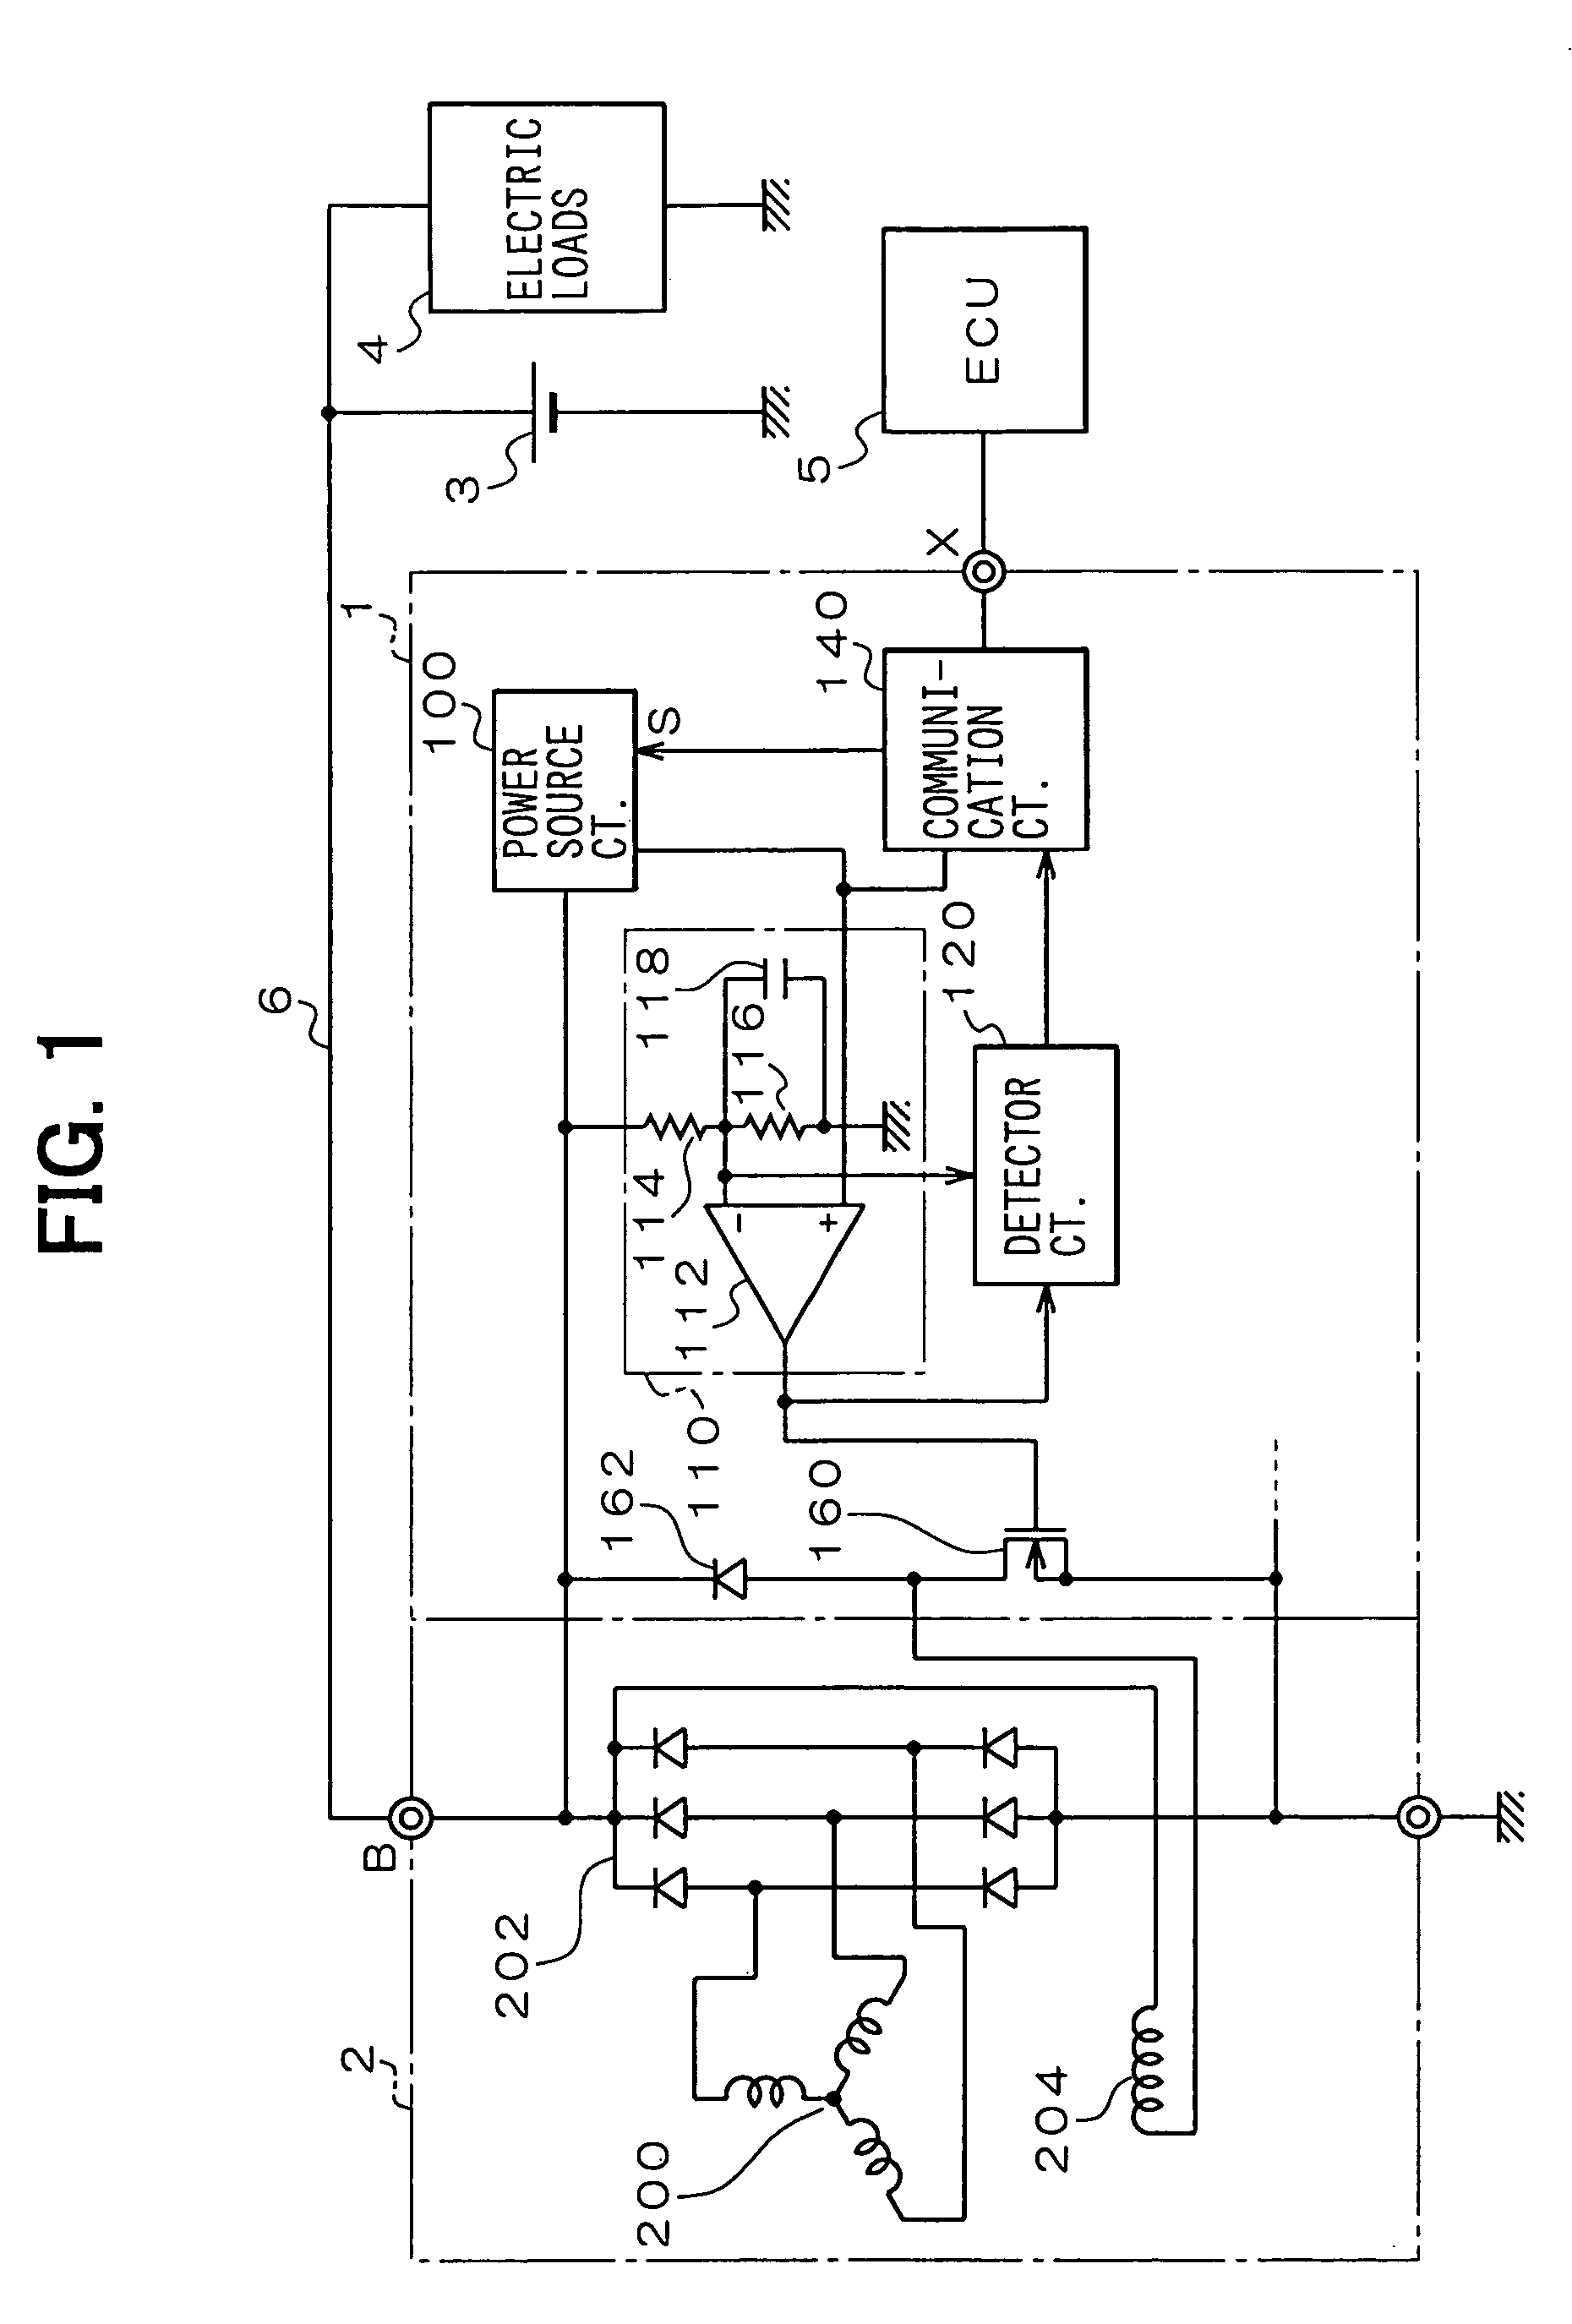 Voltage regulator for controlling output voltage of automotive alternator